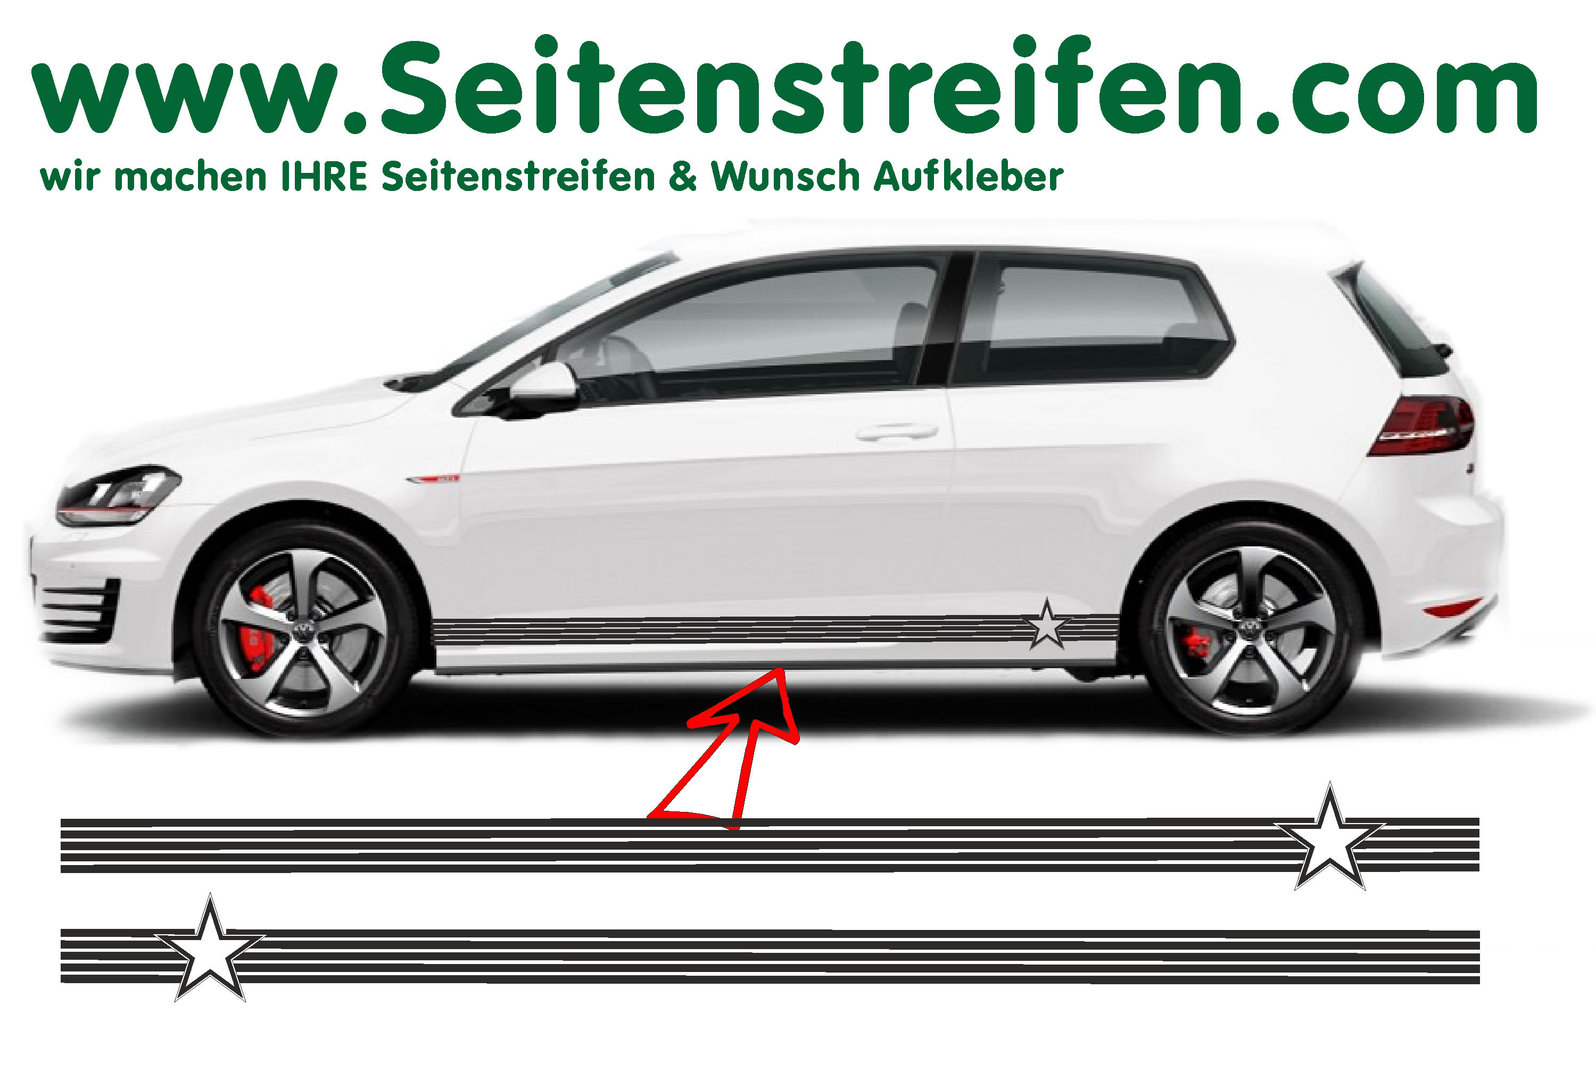 VW Golf - Stella adesivi strisce laterali adesive auto sticker - per 3-4 porte - 8496